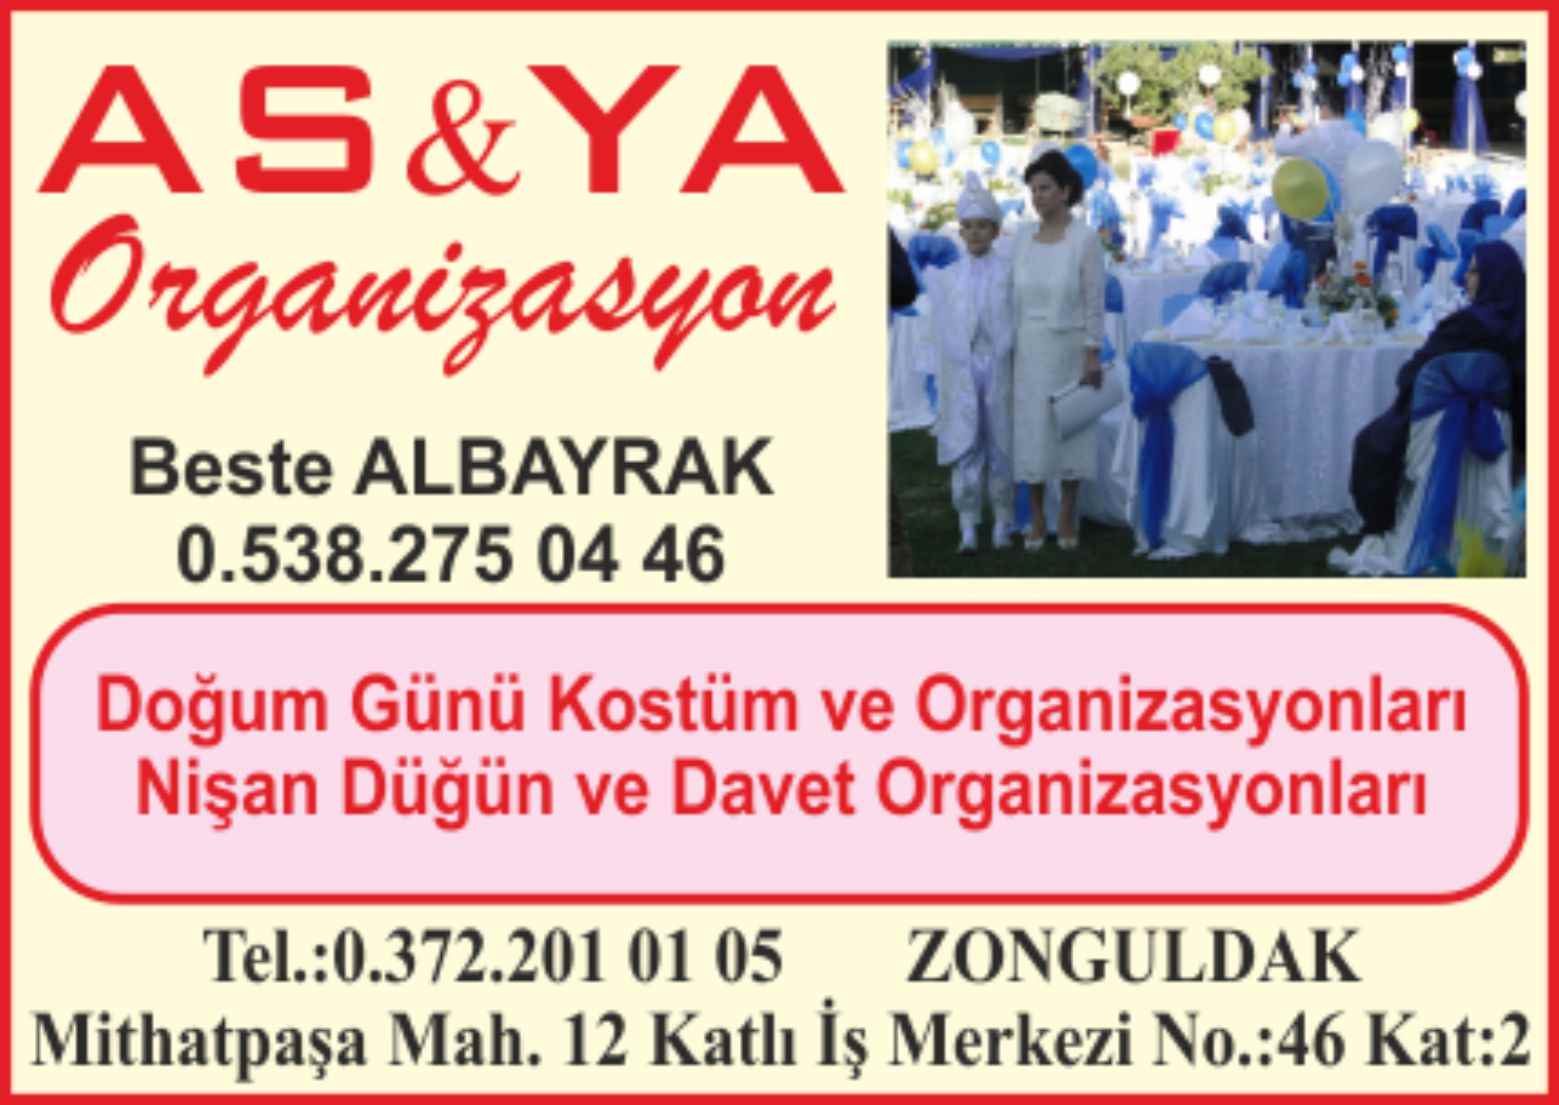 Asya Organizasyon Zonguldak